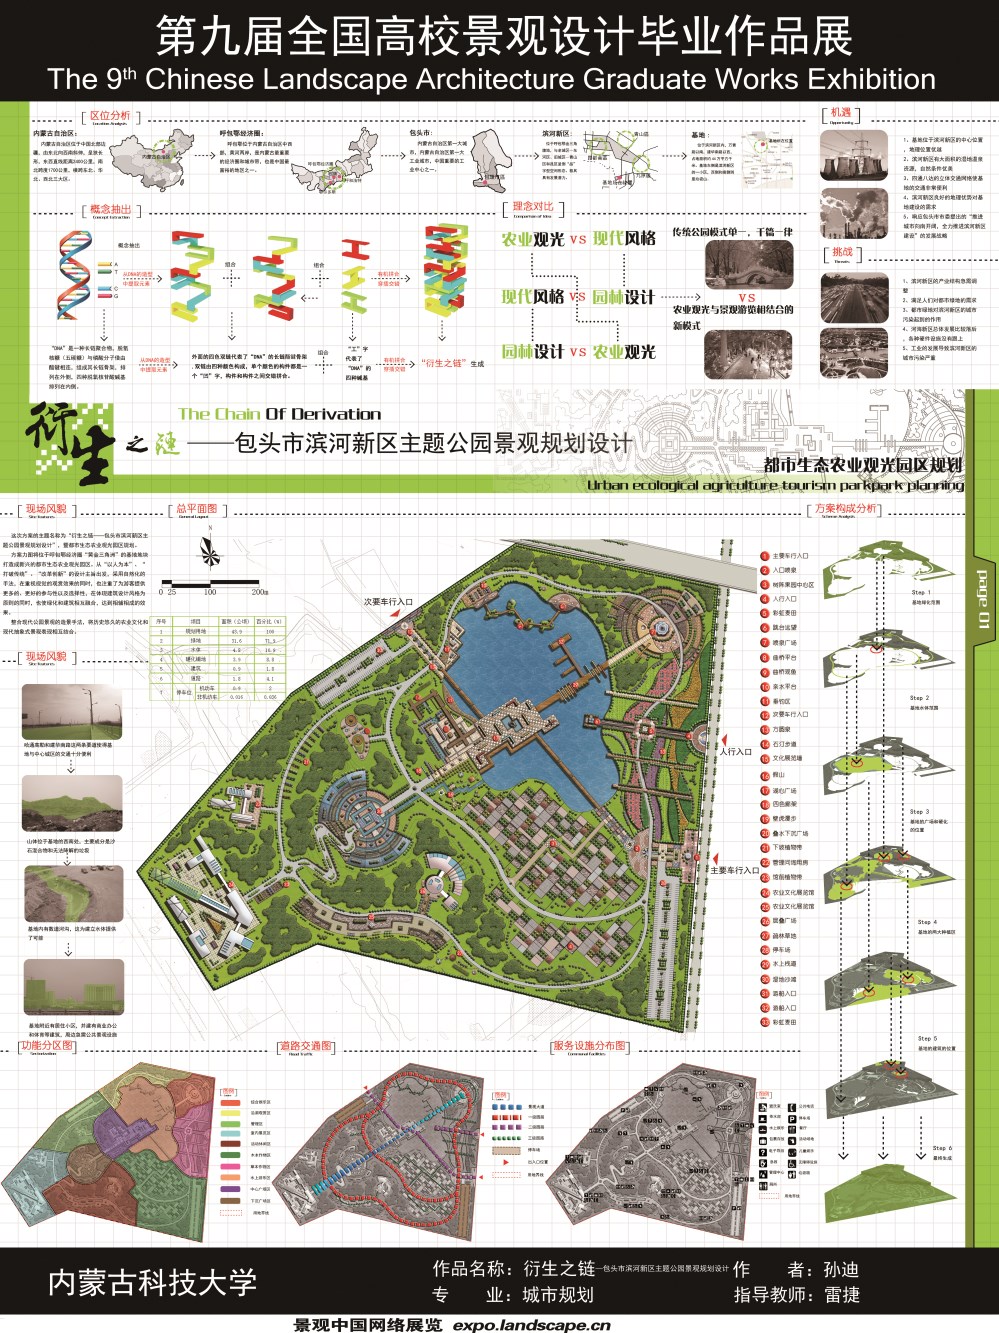 衍生之链—包头市滨河新区主题公园景观规划设计-1